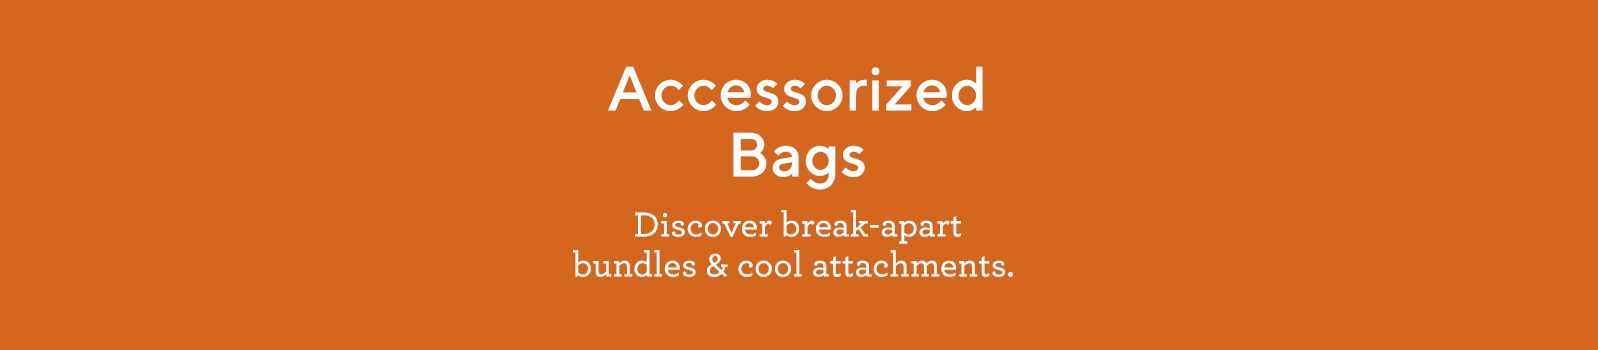 Accessorized Bags: Discover break-apart bundles & cool attachments. 